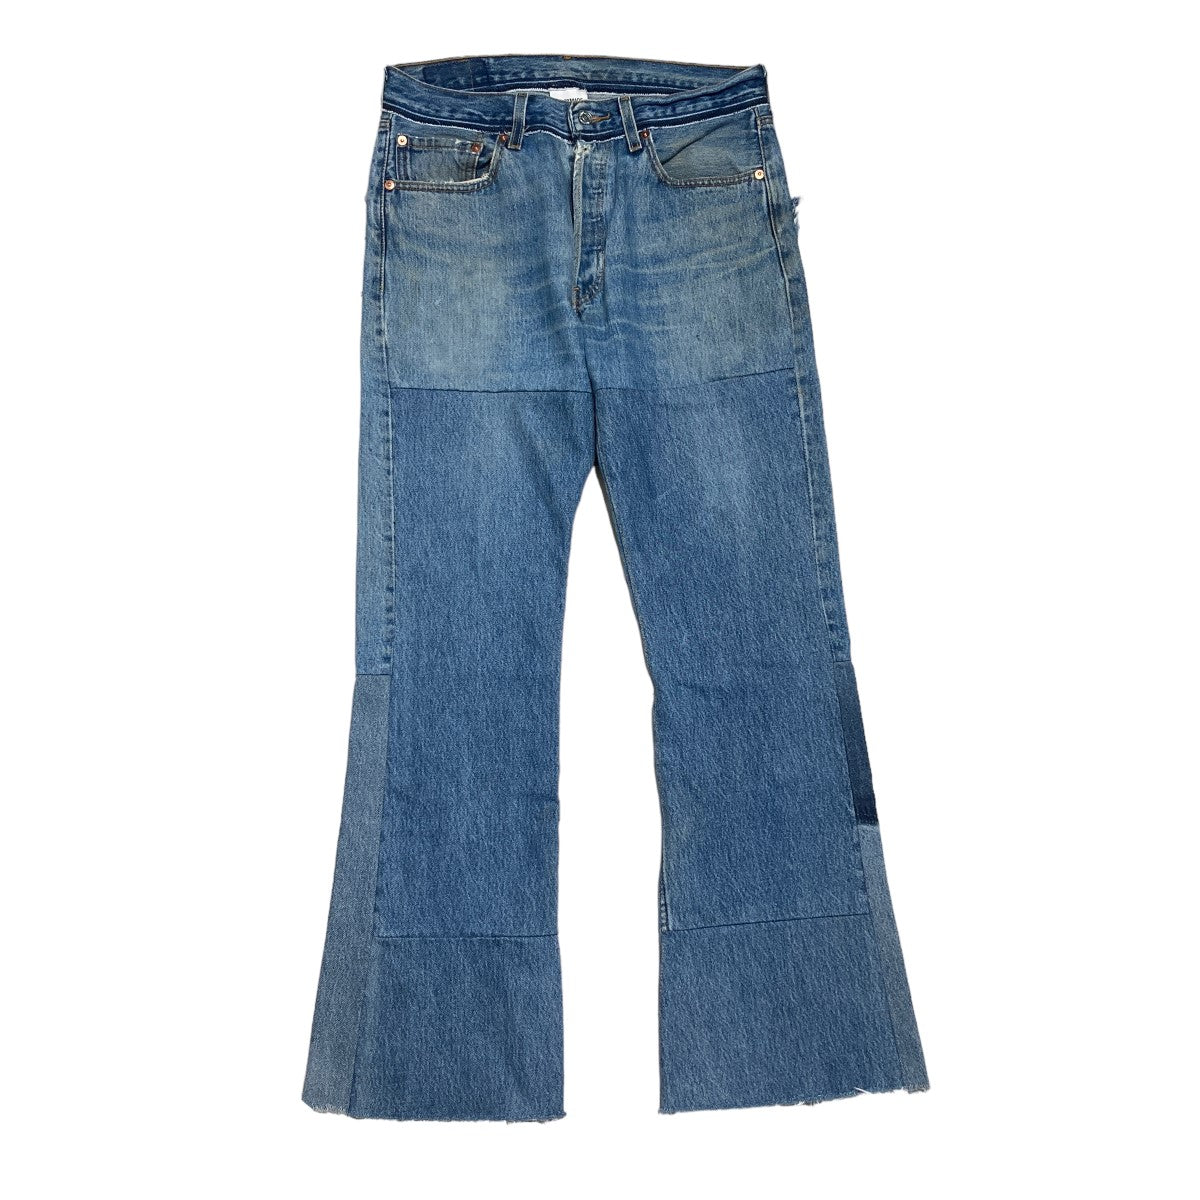 31,200円READY MADE re jeans 再構築デニムパンツ